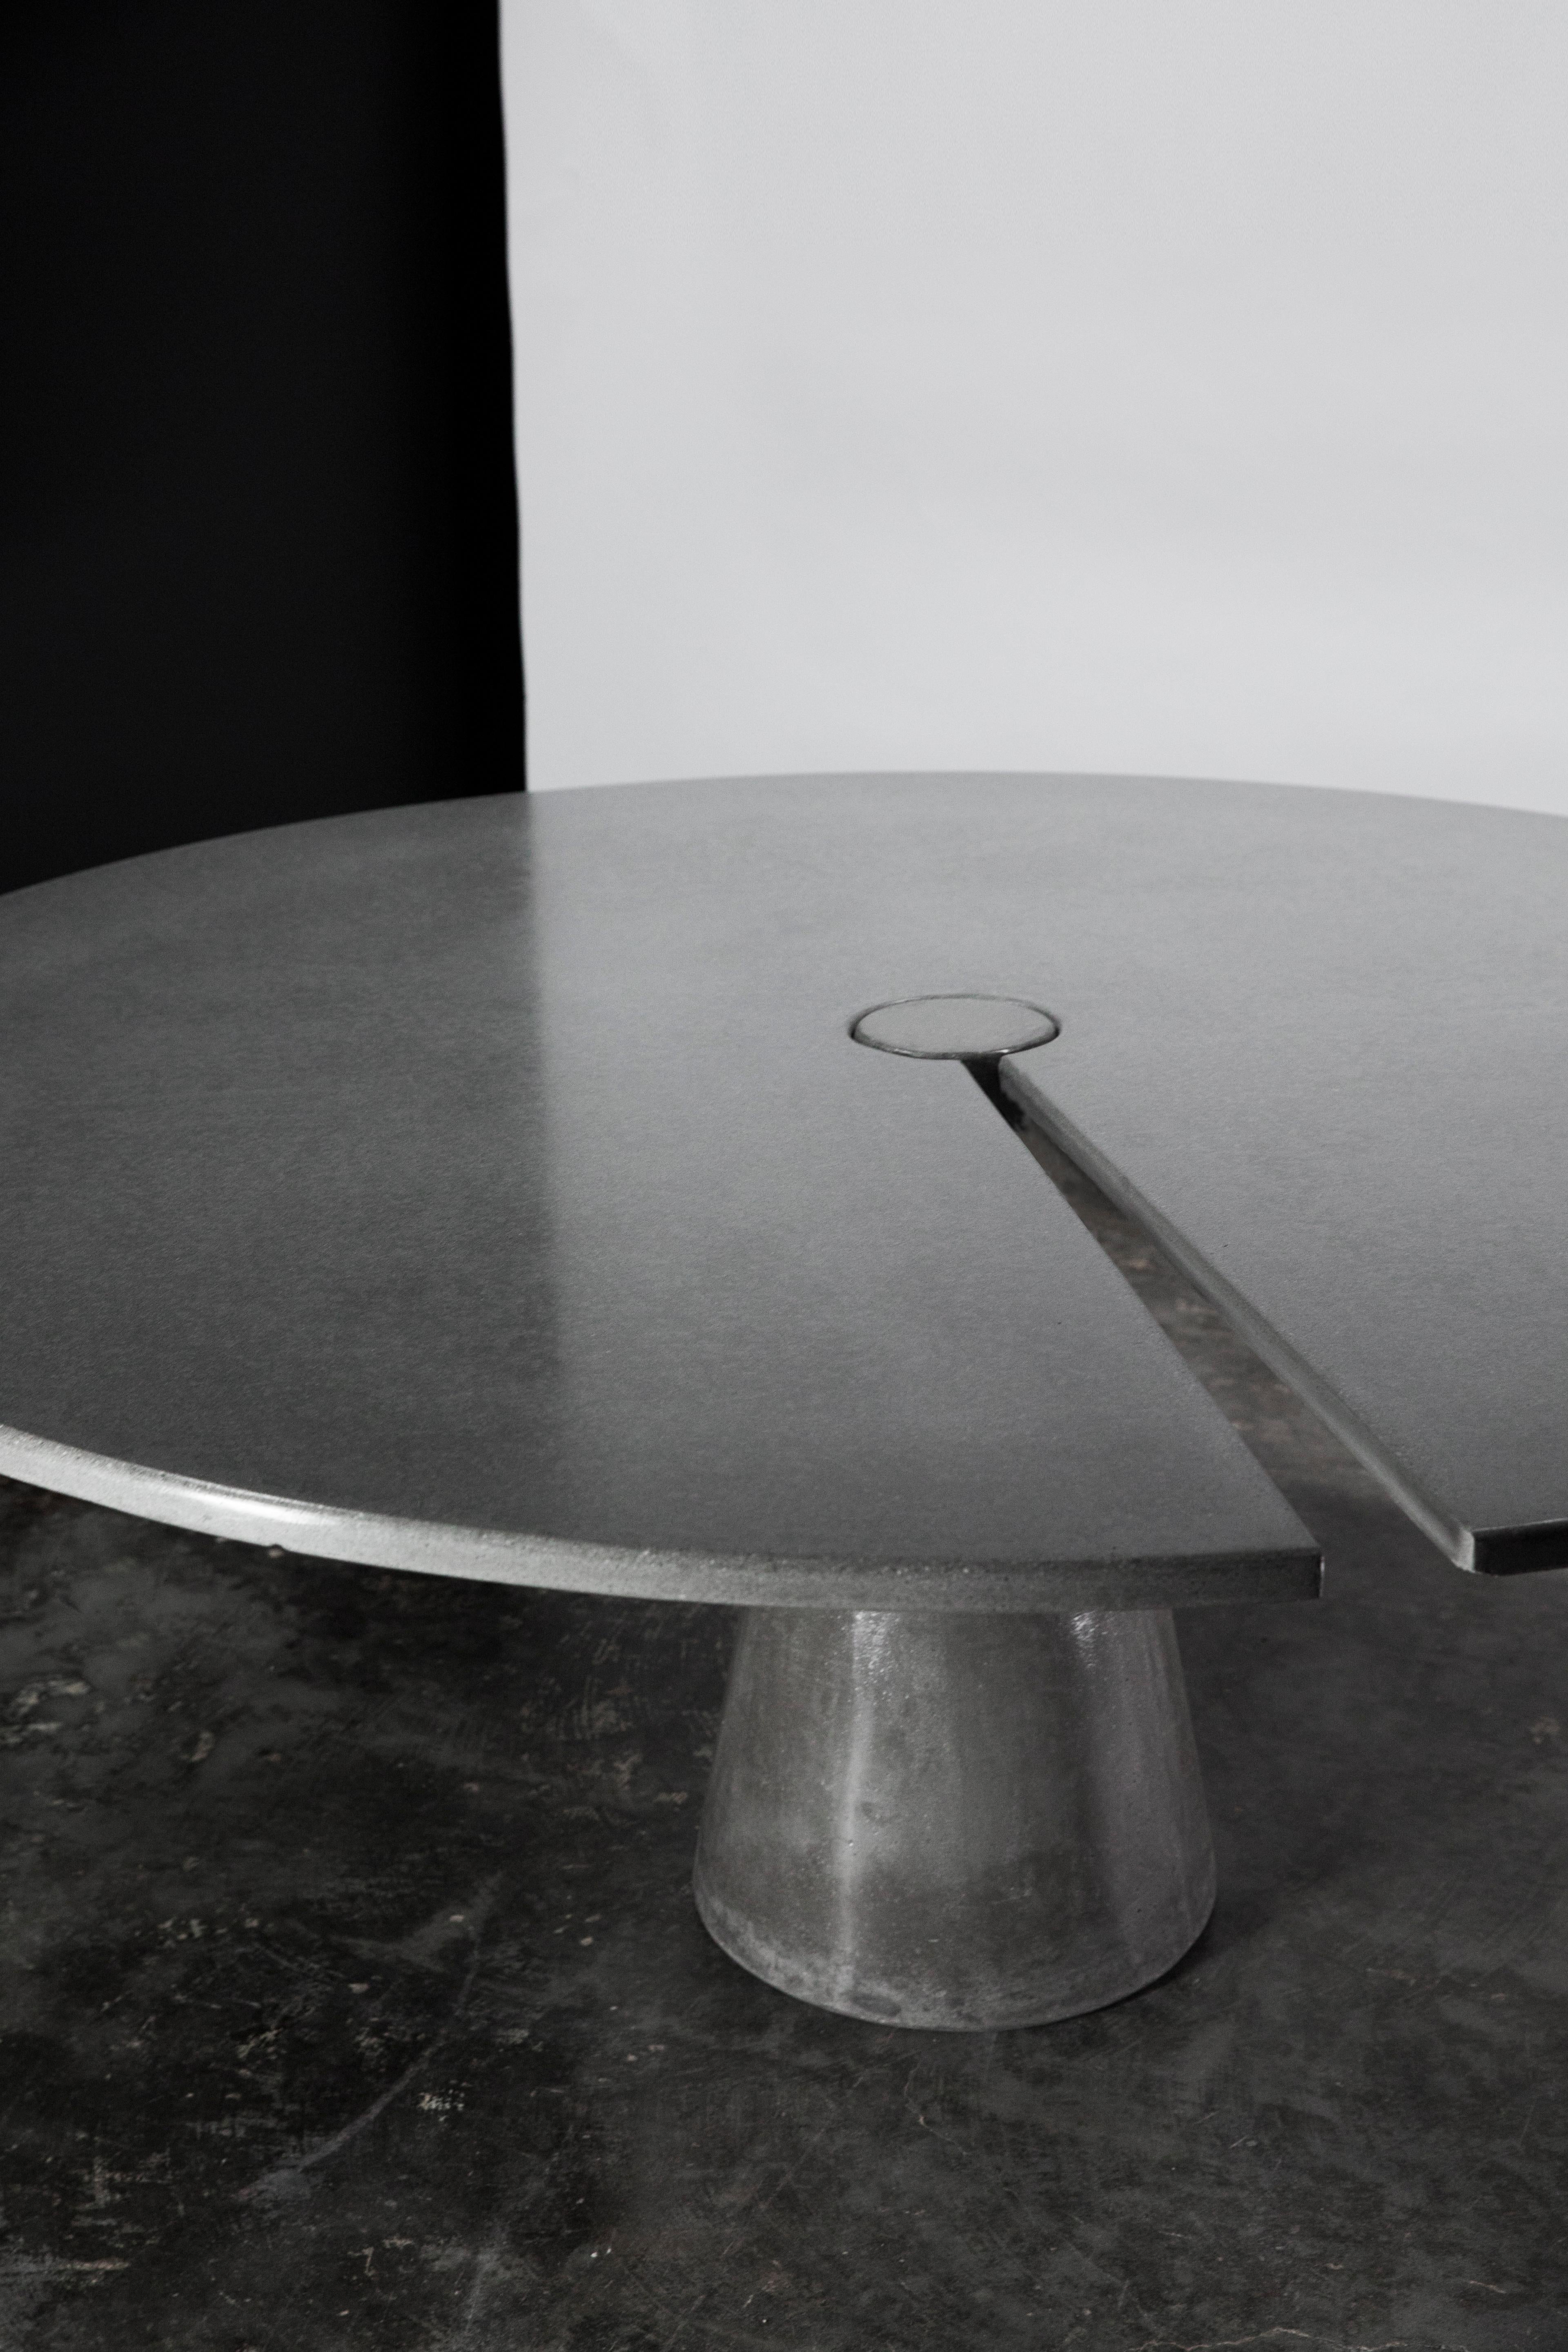 Der James de Wulf classic Split Locking Dining Table hat einen geteilten Radius in der Tischplatte. Der Tisch besteht aus zwei Teilen: Tischplatte und Untergestell, die allein durch die Schwerkraft zusammengehalten werden. Kunst und Nutzen